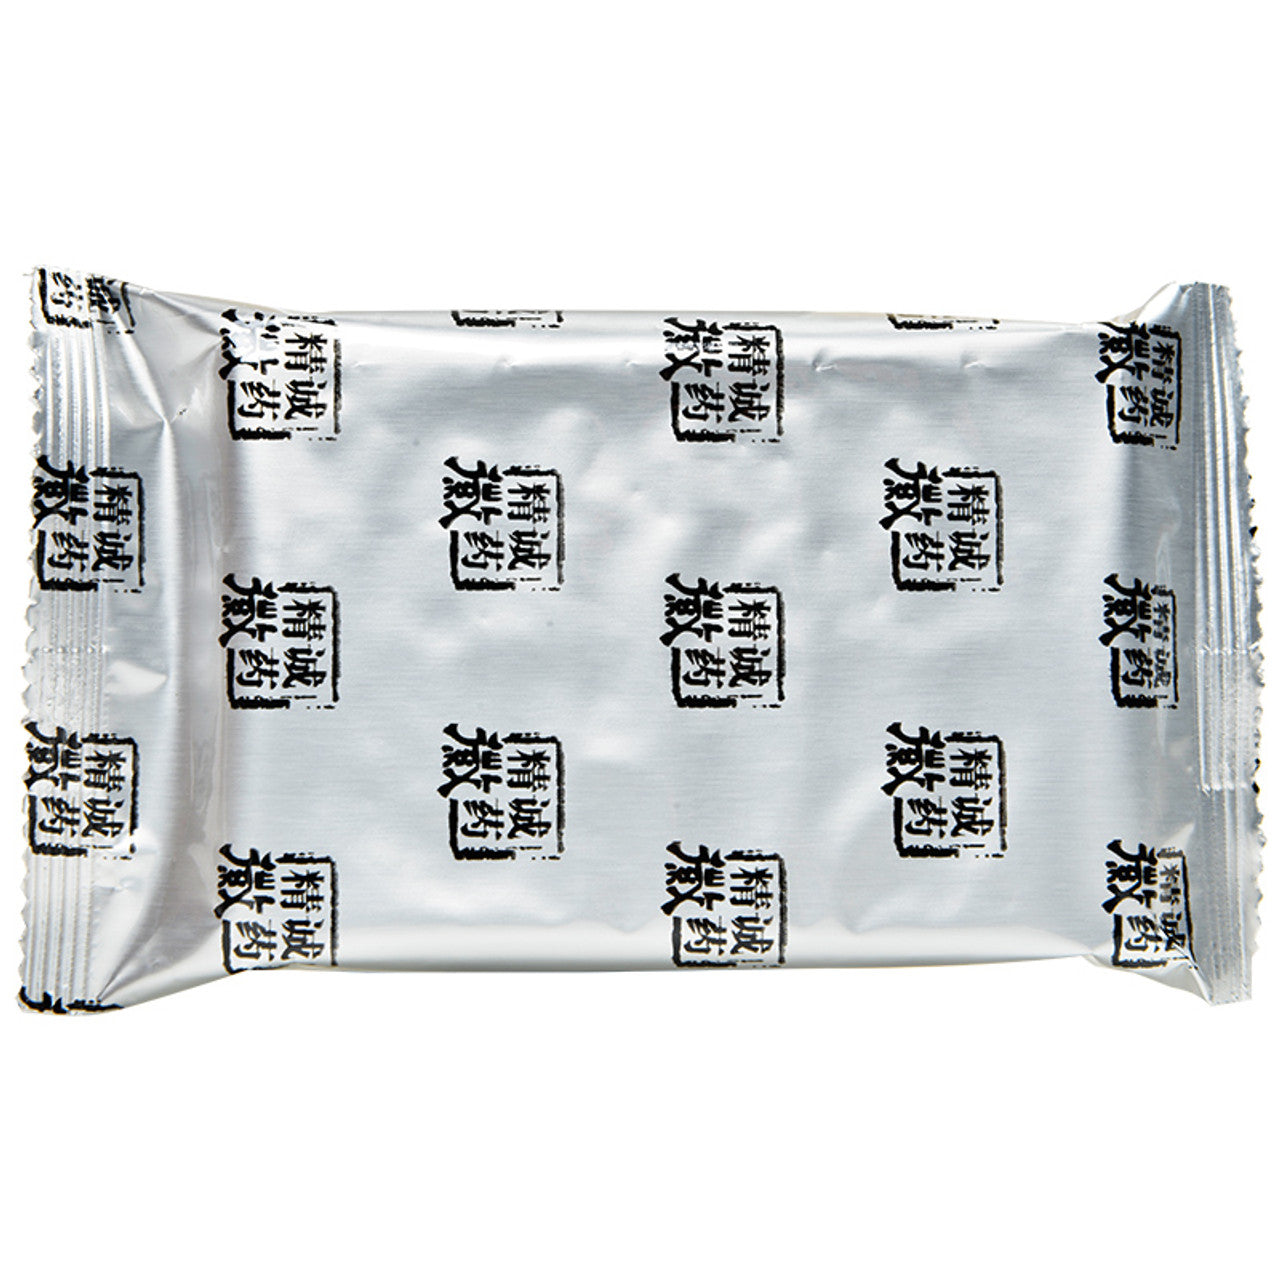 China Herb. Brand Jing Cheng Hui Yao. Naolijing Jiaonang or Nao Li Jing Jiao Nang or Naolijing Capsules or Nao Li Jing Capsules for Neurasthenia (0.4g*24 capsules*5 boxes)